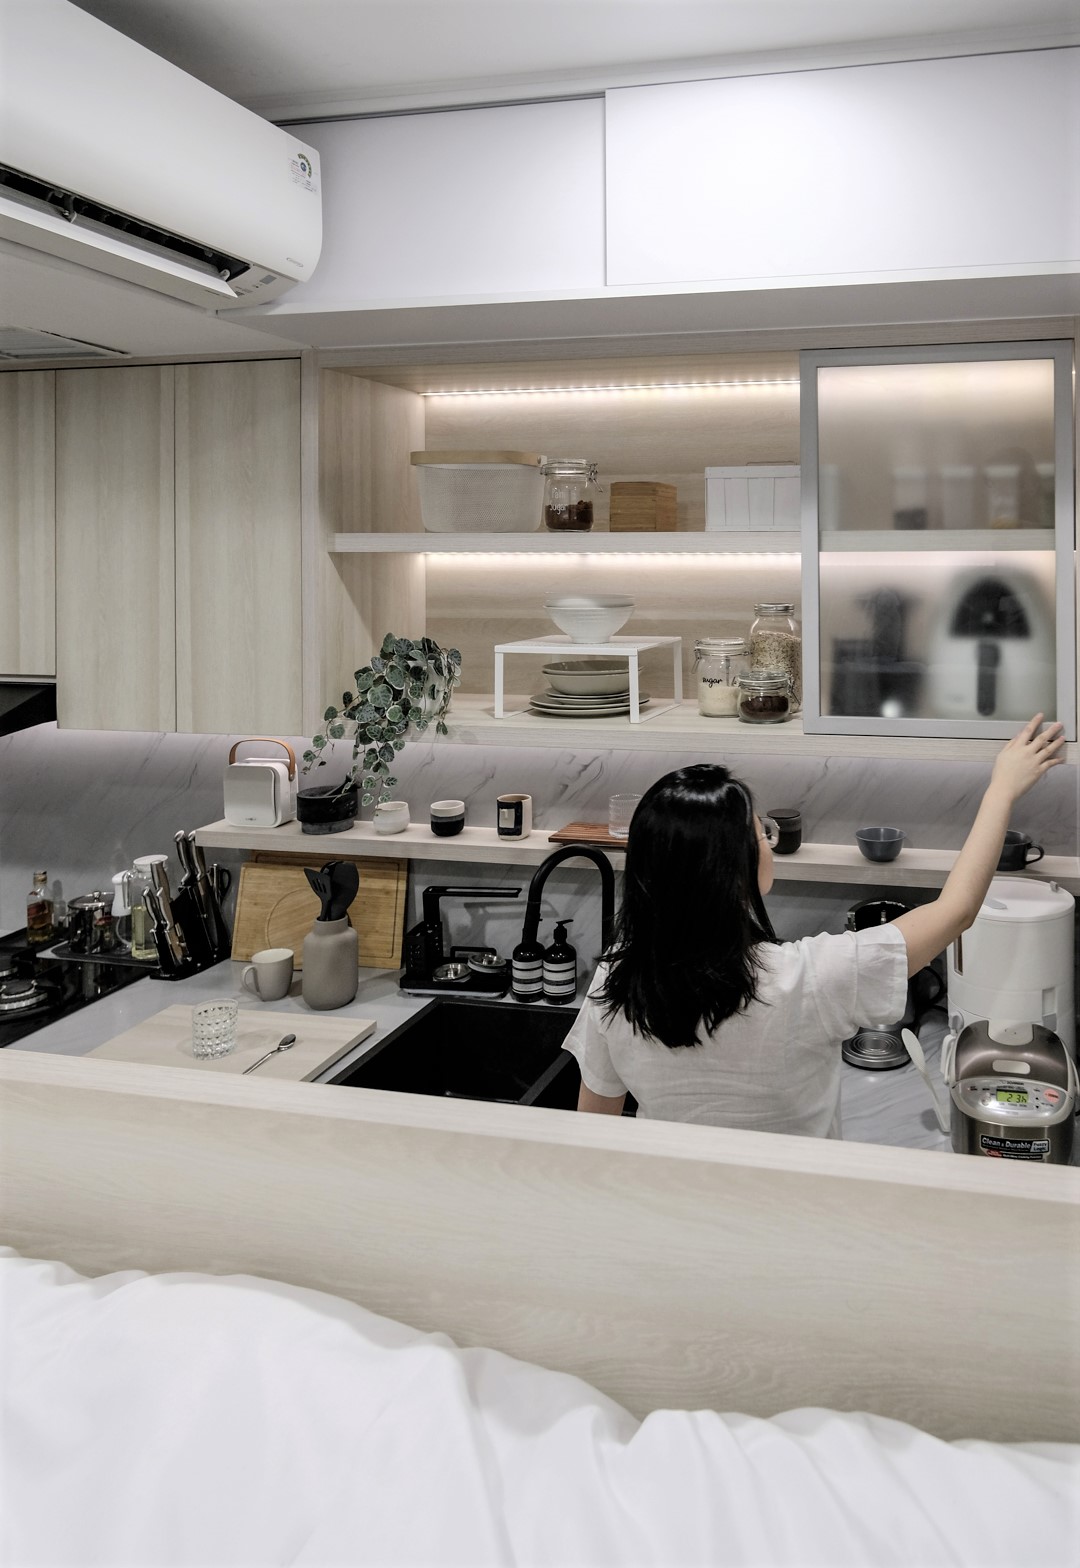 Phòng bếp chung cư nhỏ, được thiết kế với tủ gỗ sáng màu, có dải đèn LED chiếu sáng giúp không gian luôn sáng sủa.